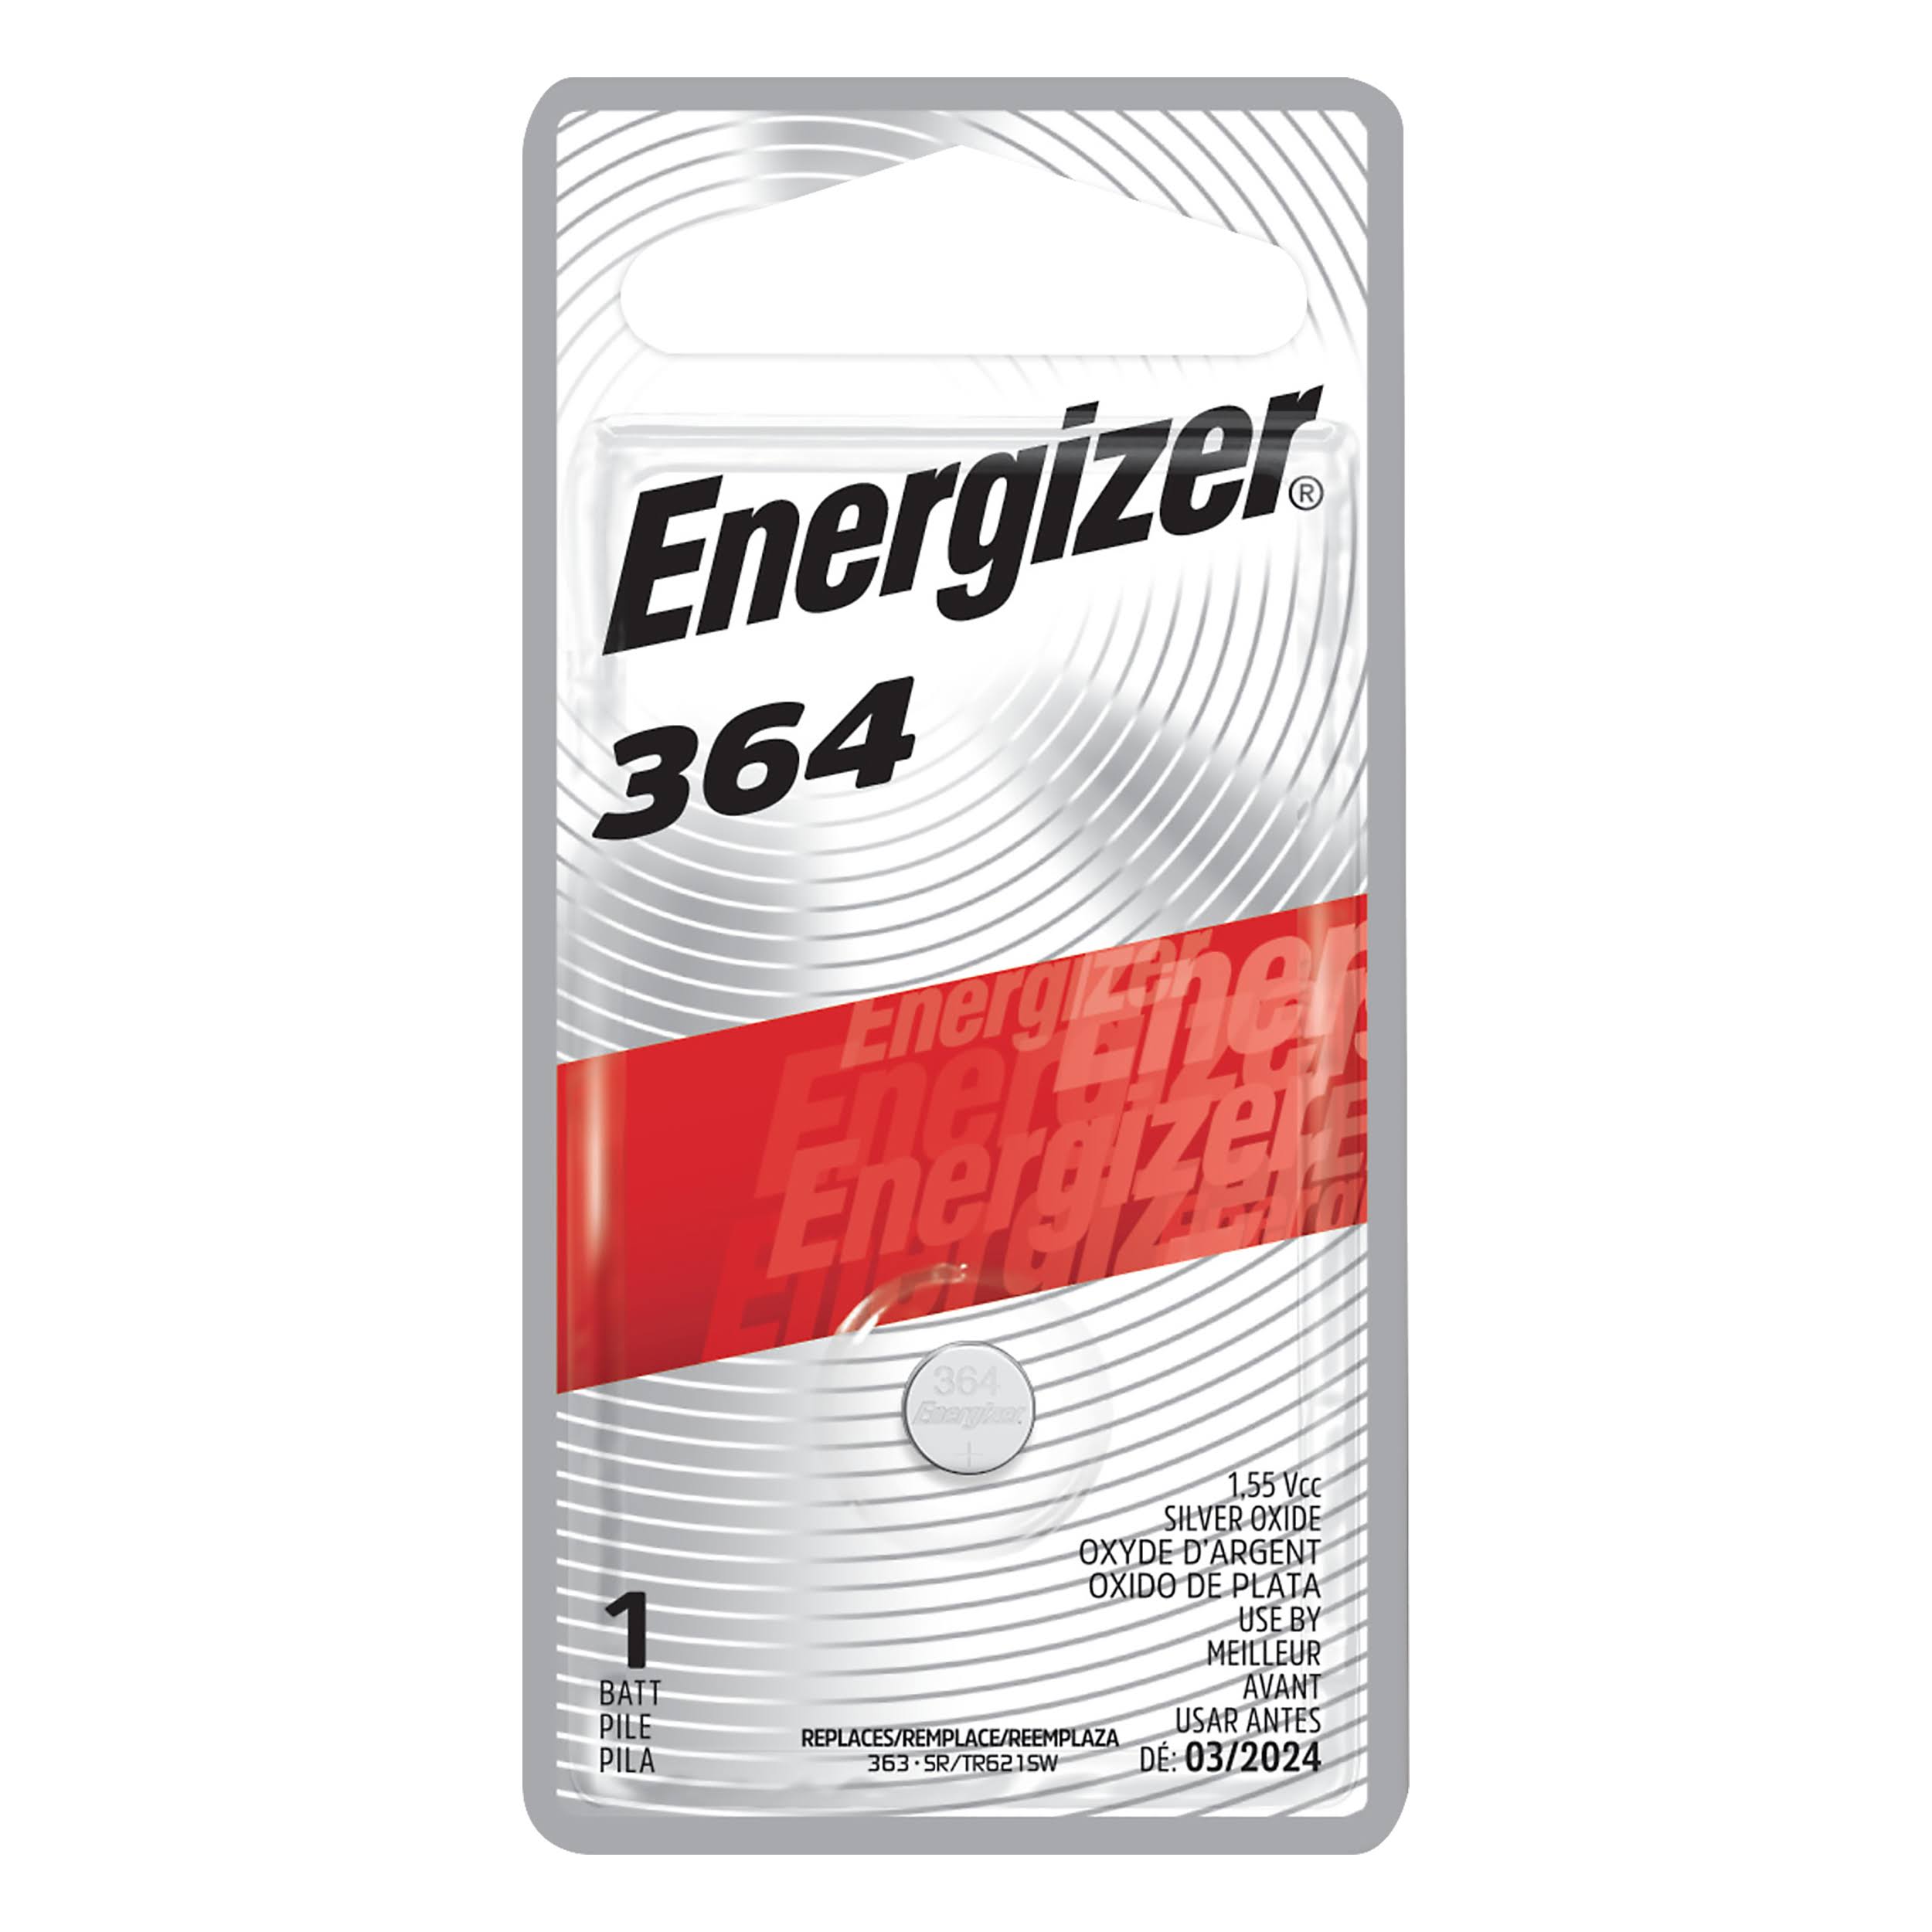 Energizer 364BPZ Zero Mercury Battery